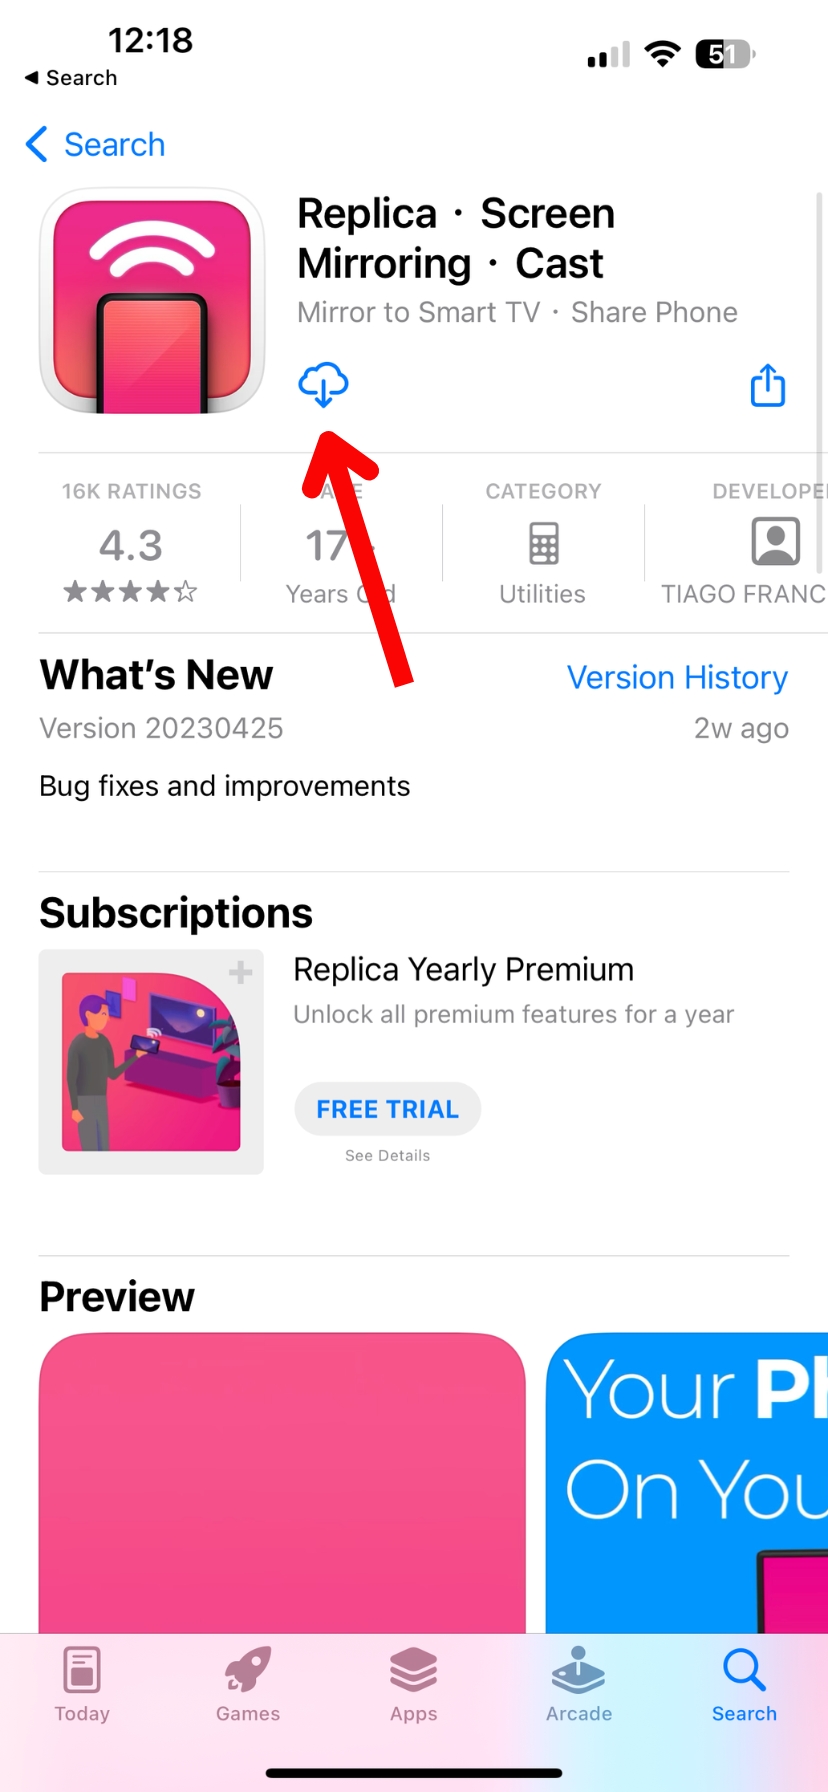 Replica in the App Store screenshot